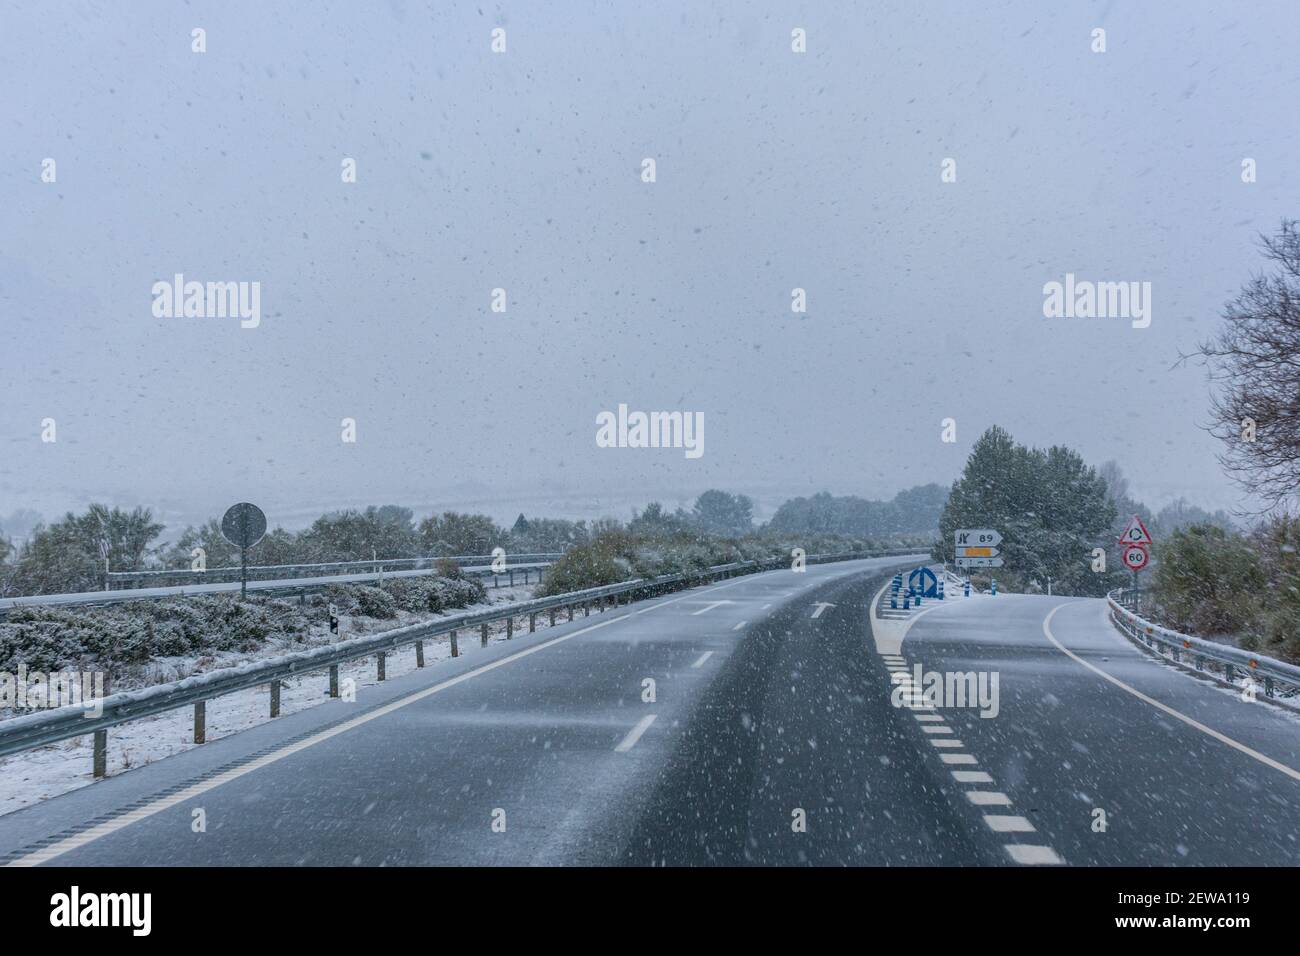 Autoroute par un jour de neige, la route commence à devenir blanche à cause de l'accumulation de neige. Banque D'Images